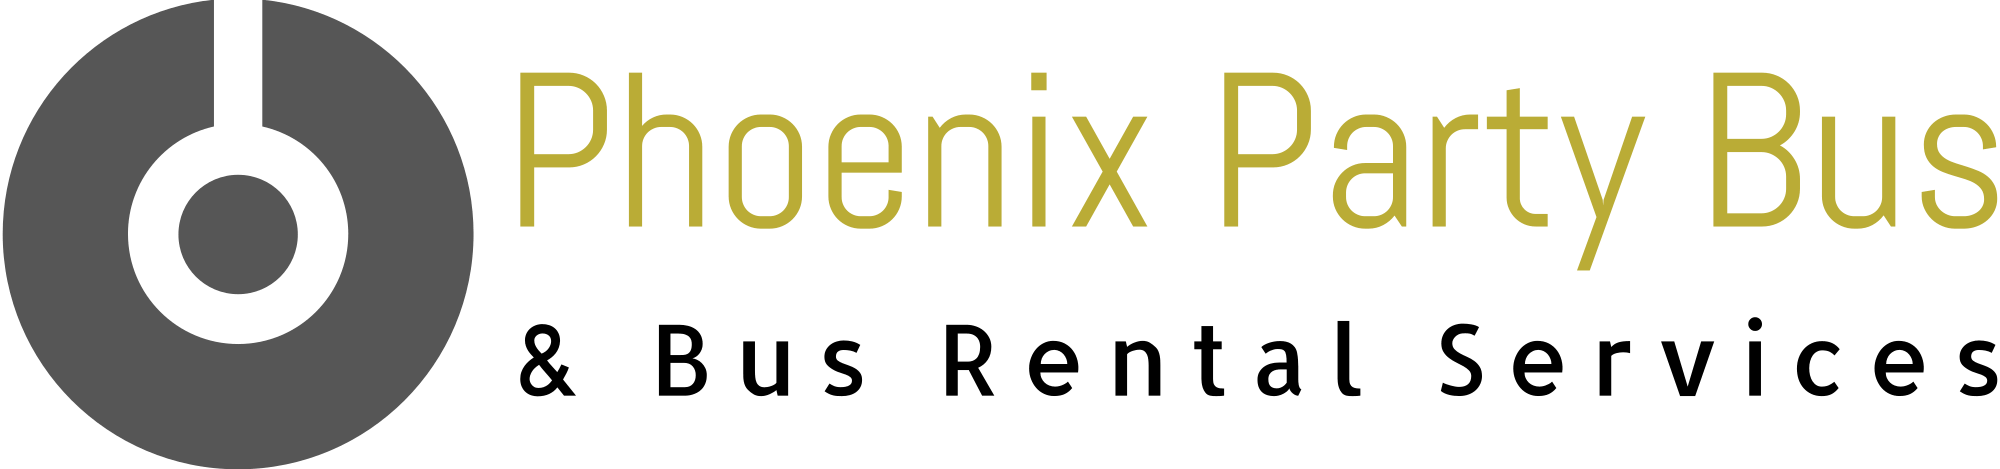 Phoenix Party Bus Company logo